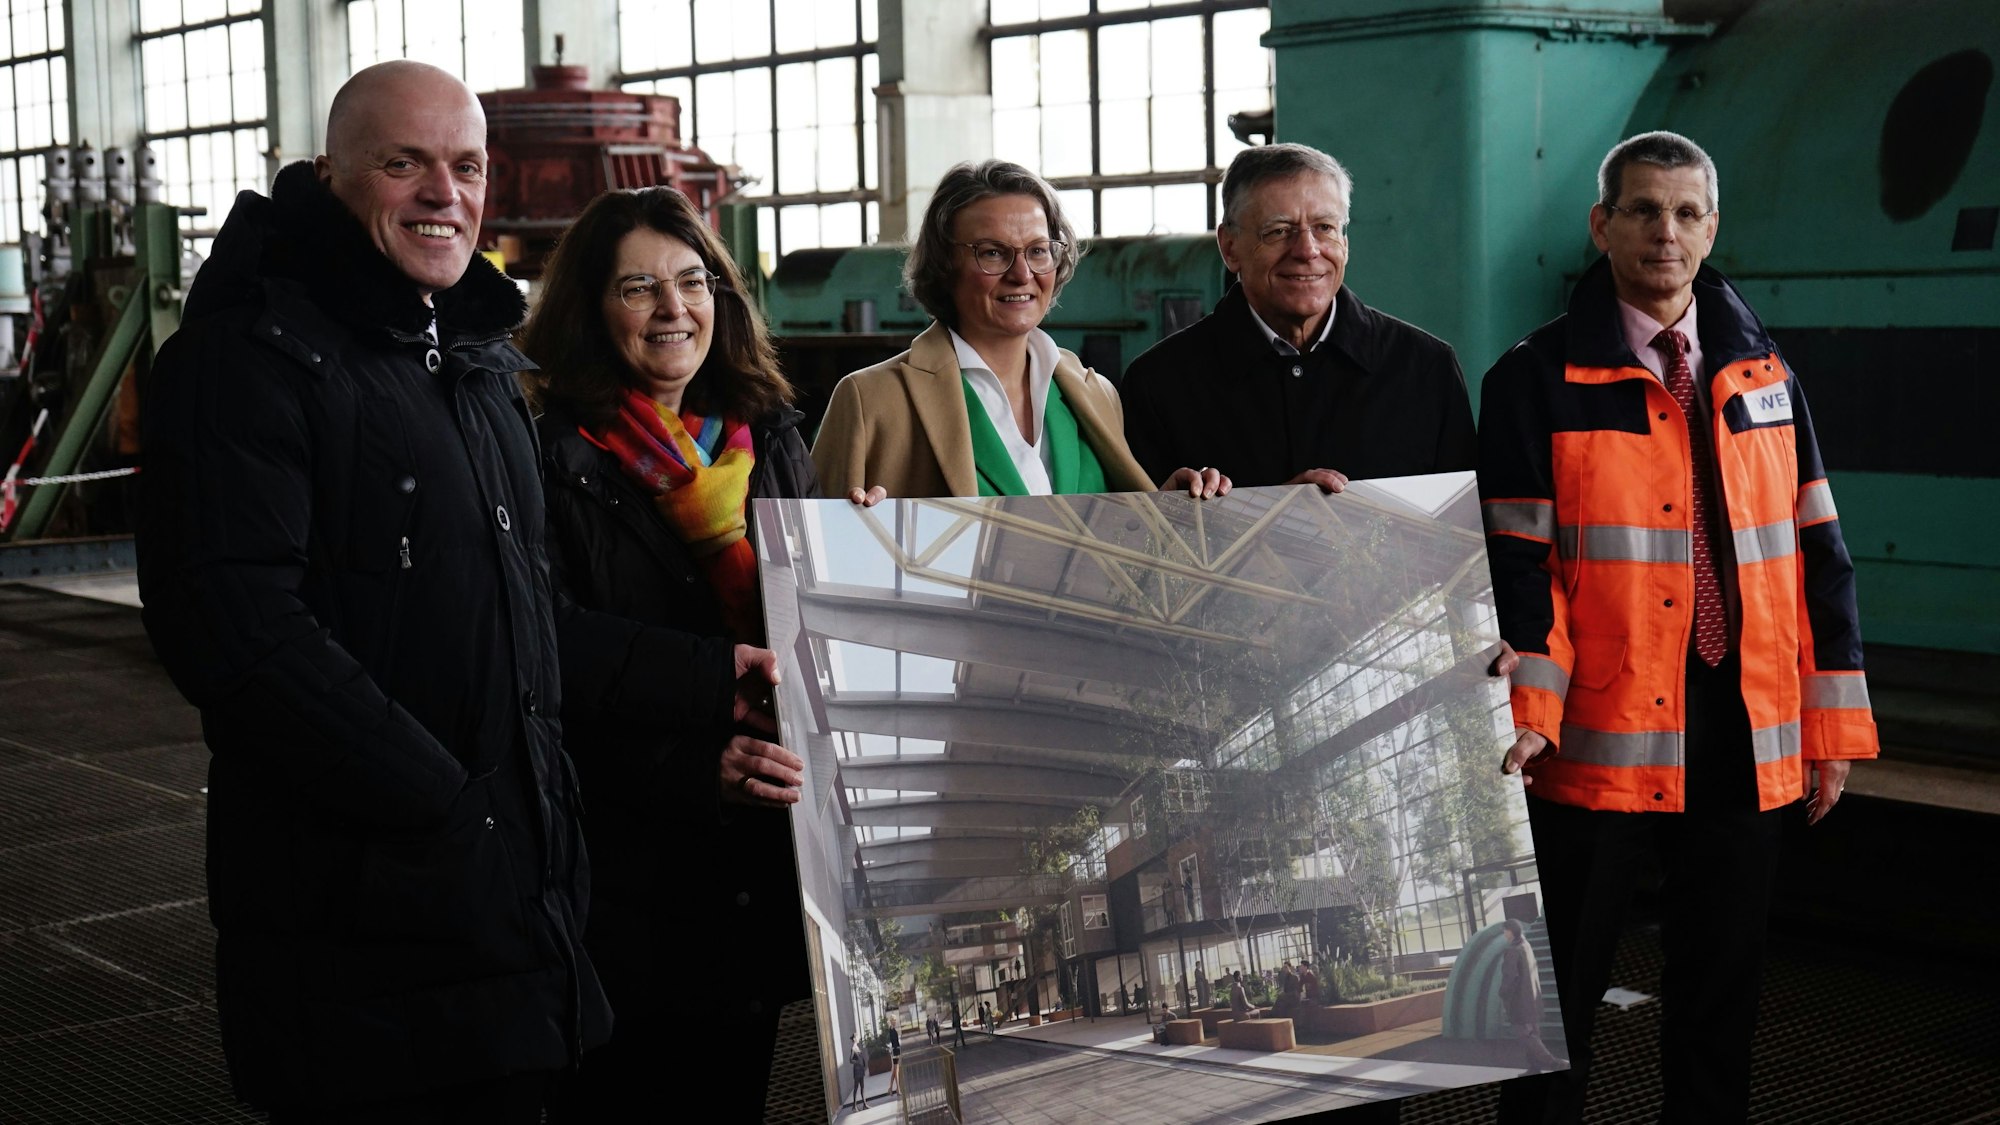 Ein Gruppenbild in der großen Halle des ehemaligen Kraftwerks zeigt beteiligte aus Politik und Wirtschaft.